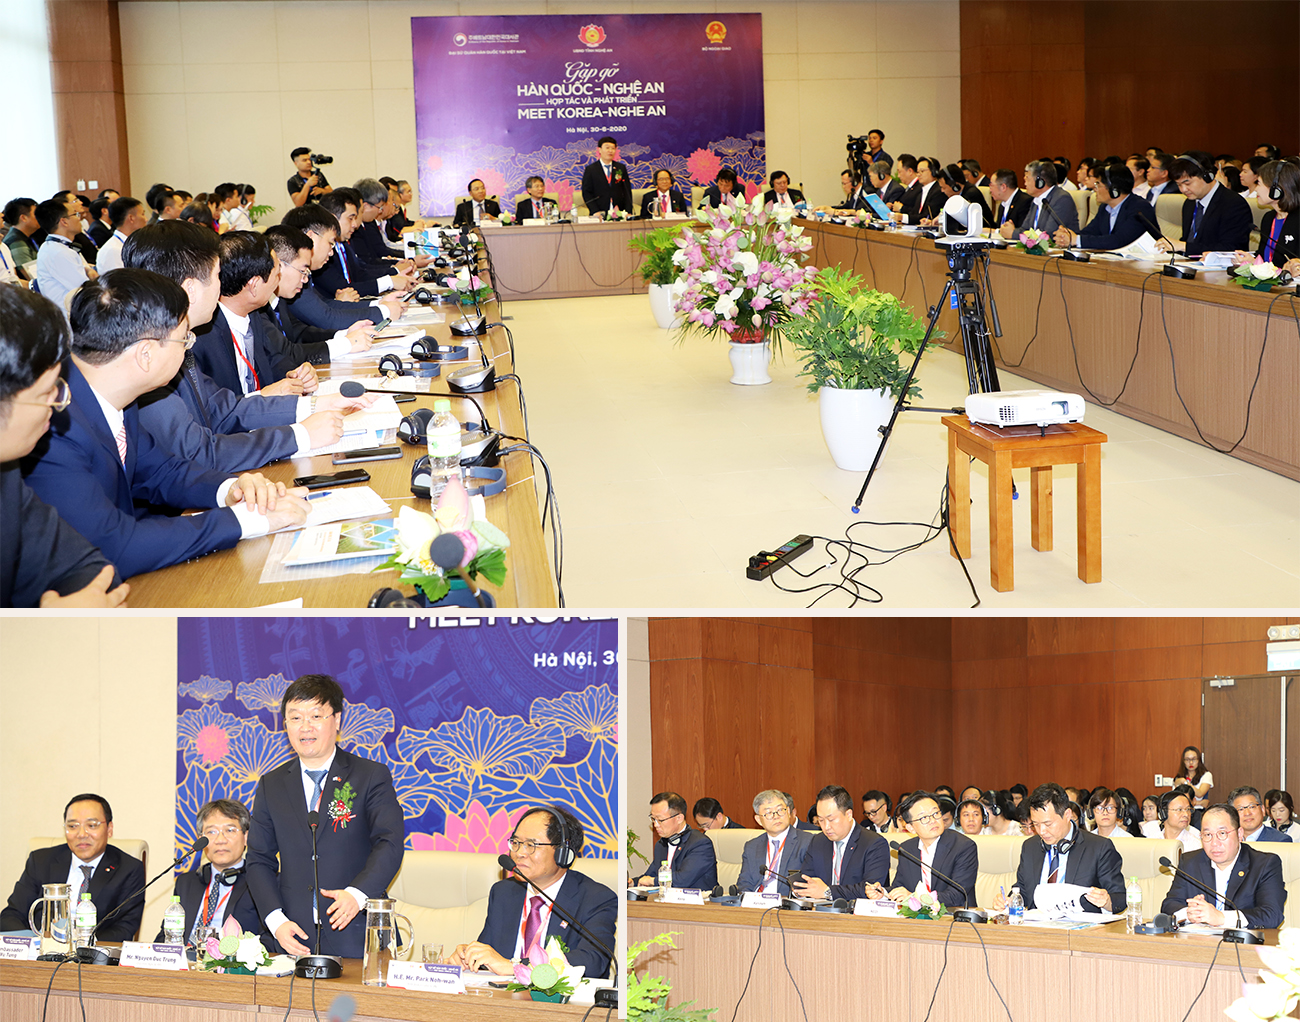 Toàn cảnh hội nghị Nghệ An - Hàn Quốc diễn ra ngày 30/6/2020 tại Hà Nội.